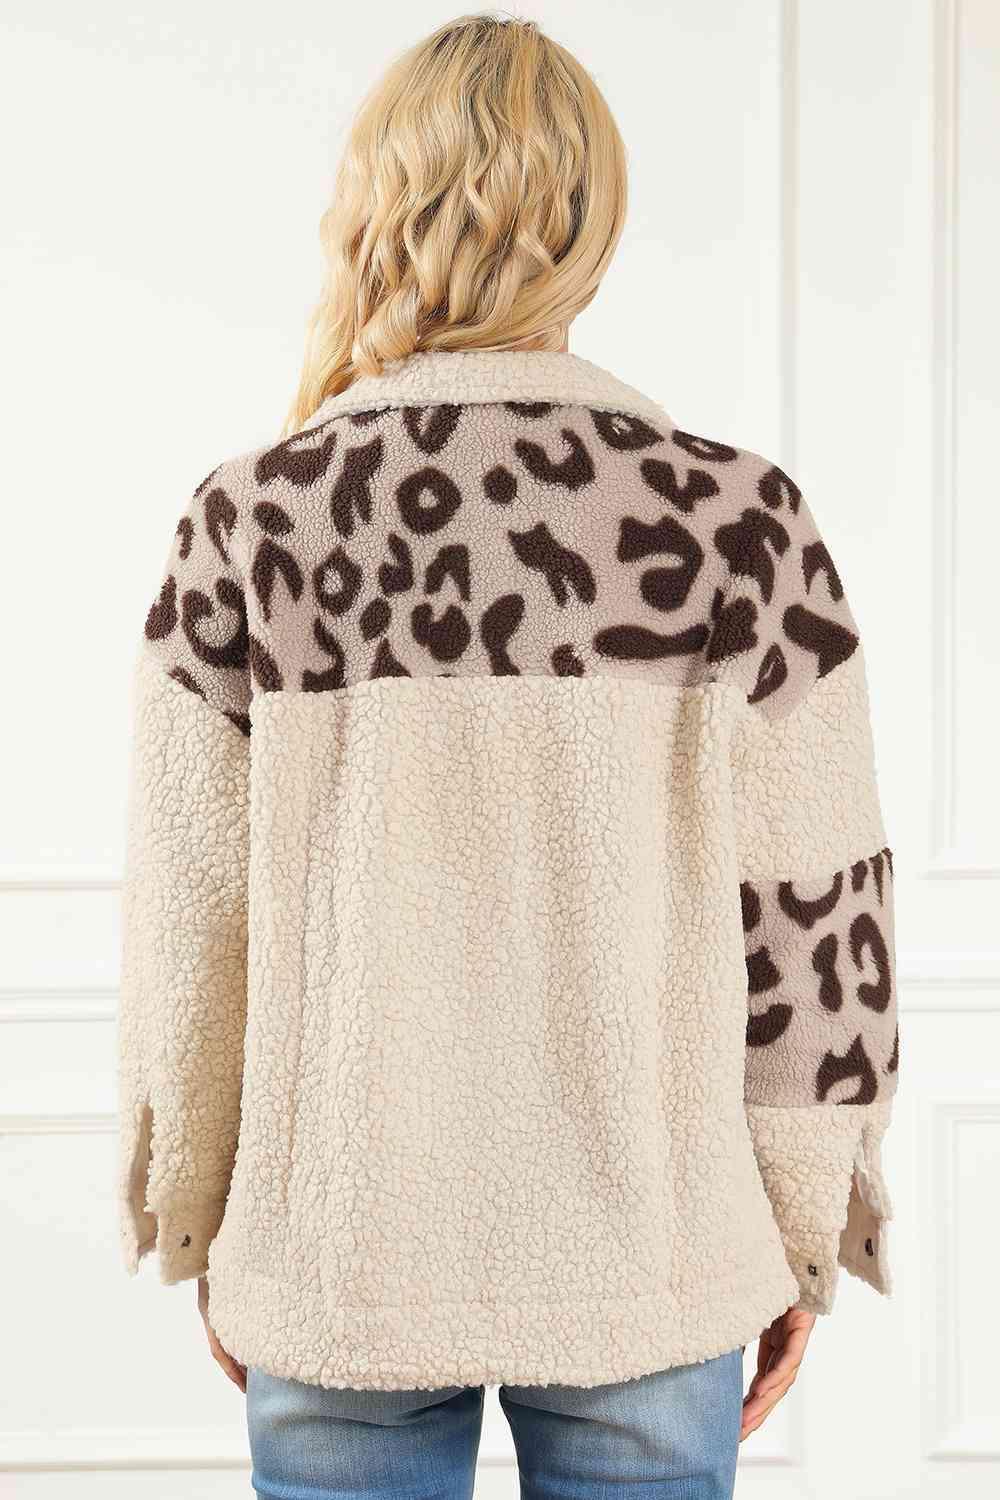 Fierce Winter Snap Button Leopard Teddy Jacket - MXSTUDIO.COM